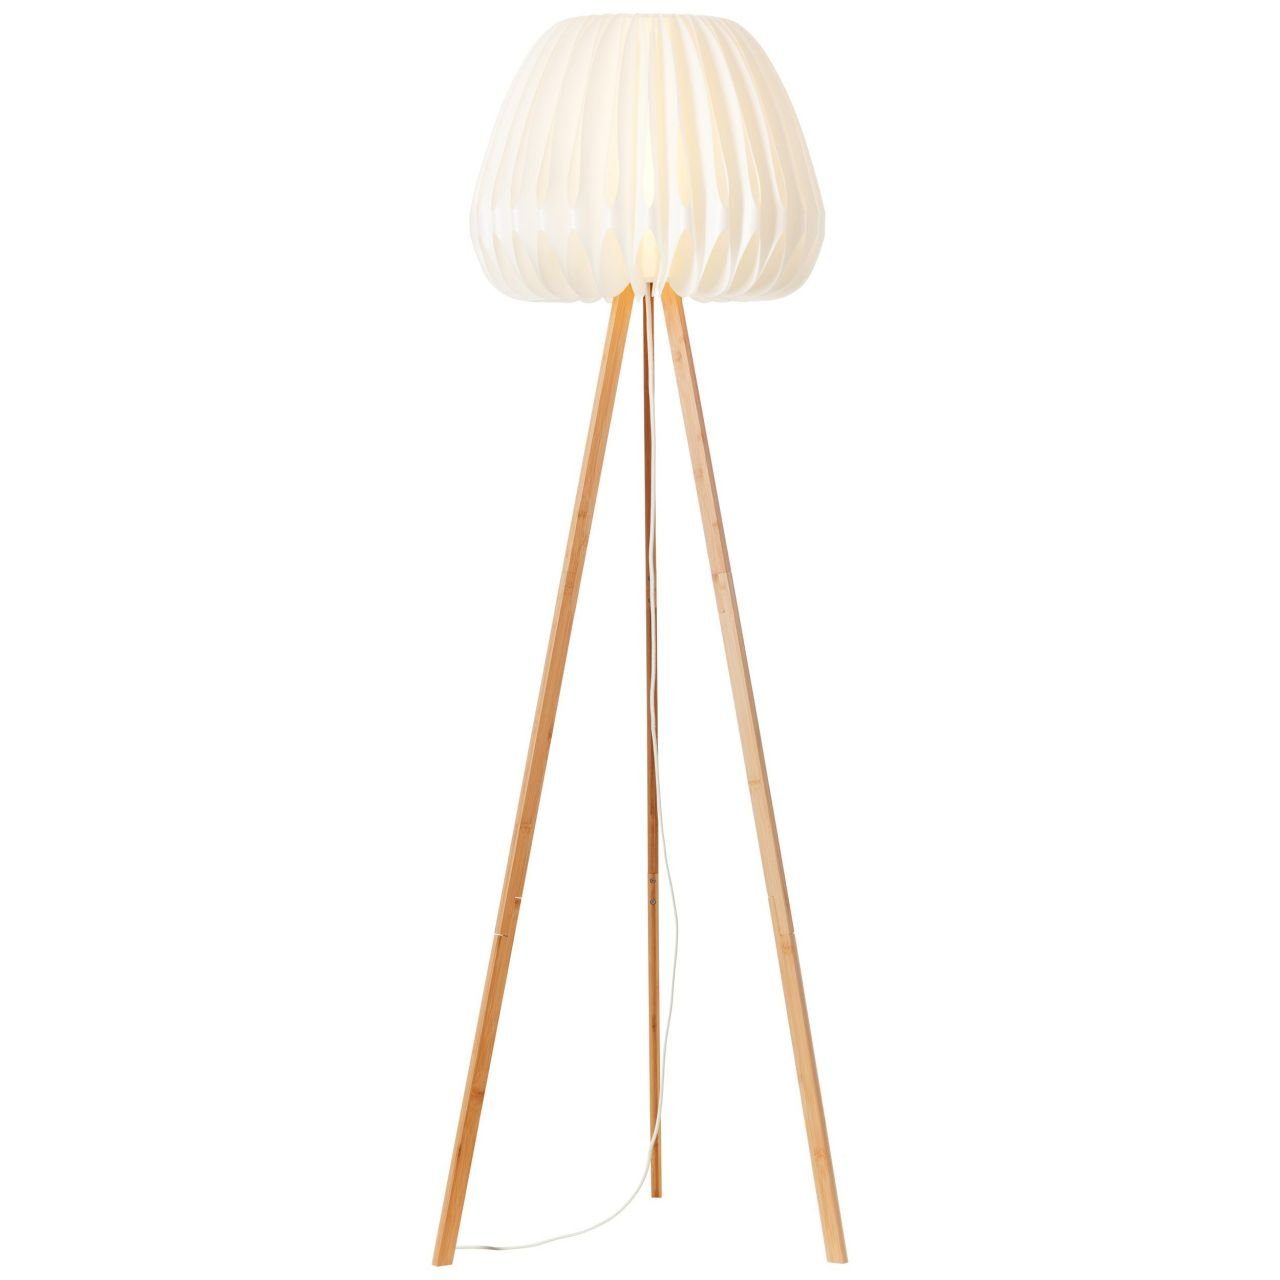 Brilliant Stehlampe Lampe, Standleuchte, Bambus/Kunststoff dreibeinig Inna, holz Inna hell/weiß